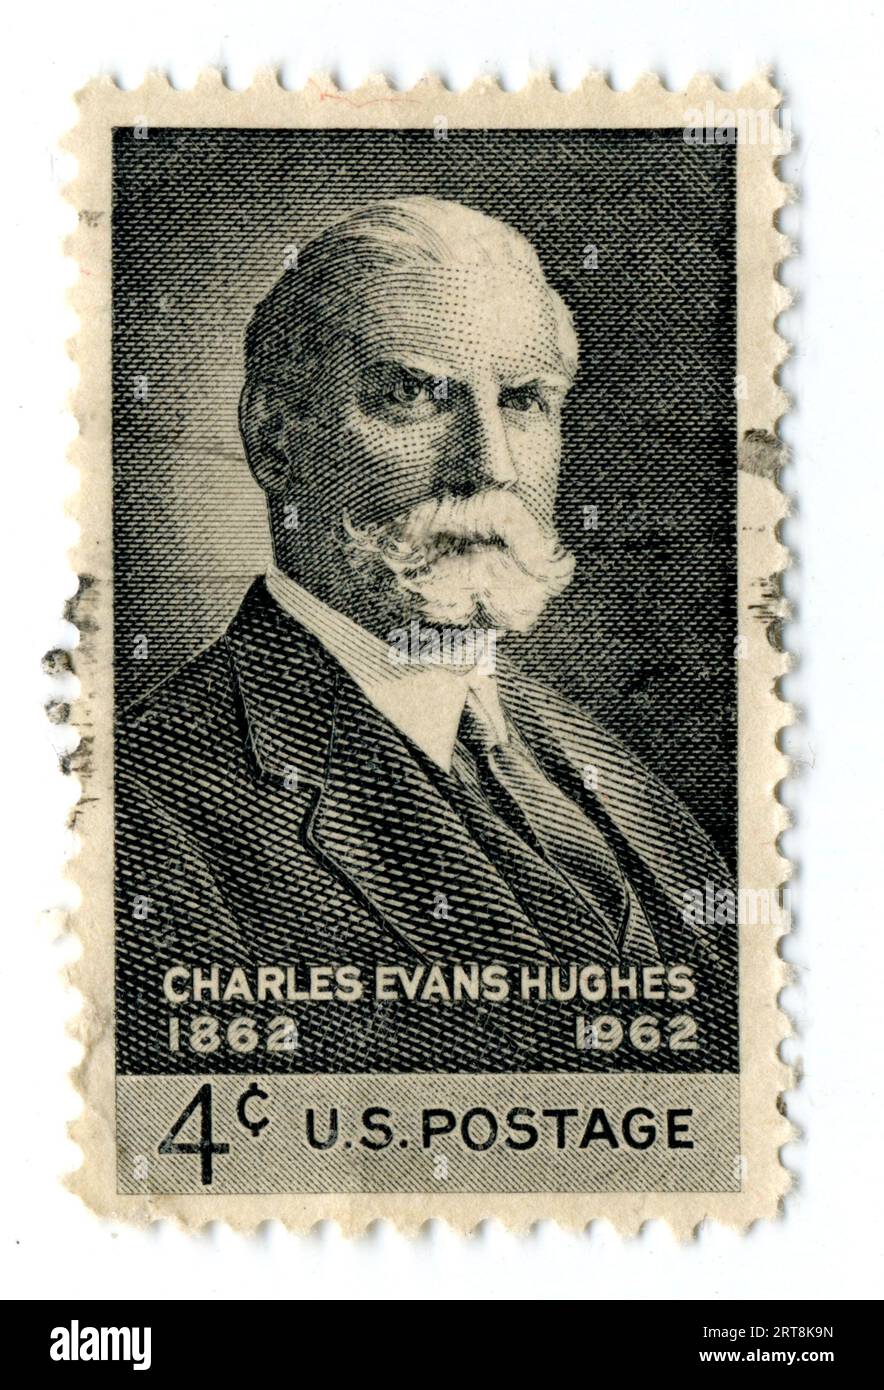 Un francobollo statunitense cancellato in onore dell'ex giudice della Corte Suprema degli Stati Uniti Charles Evans Hughes emesso nel 1962. Foto Stock